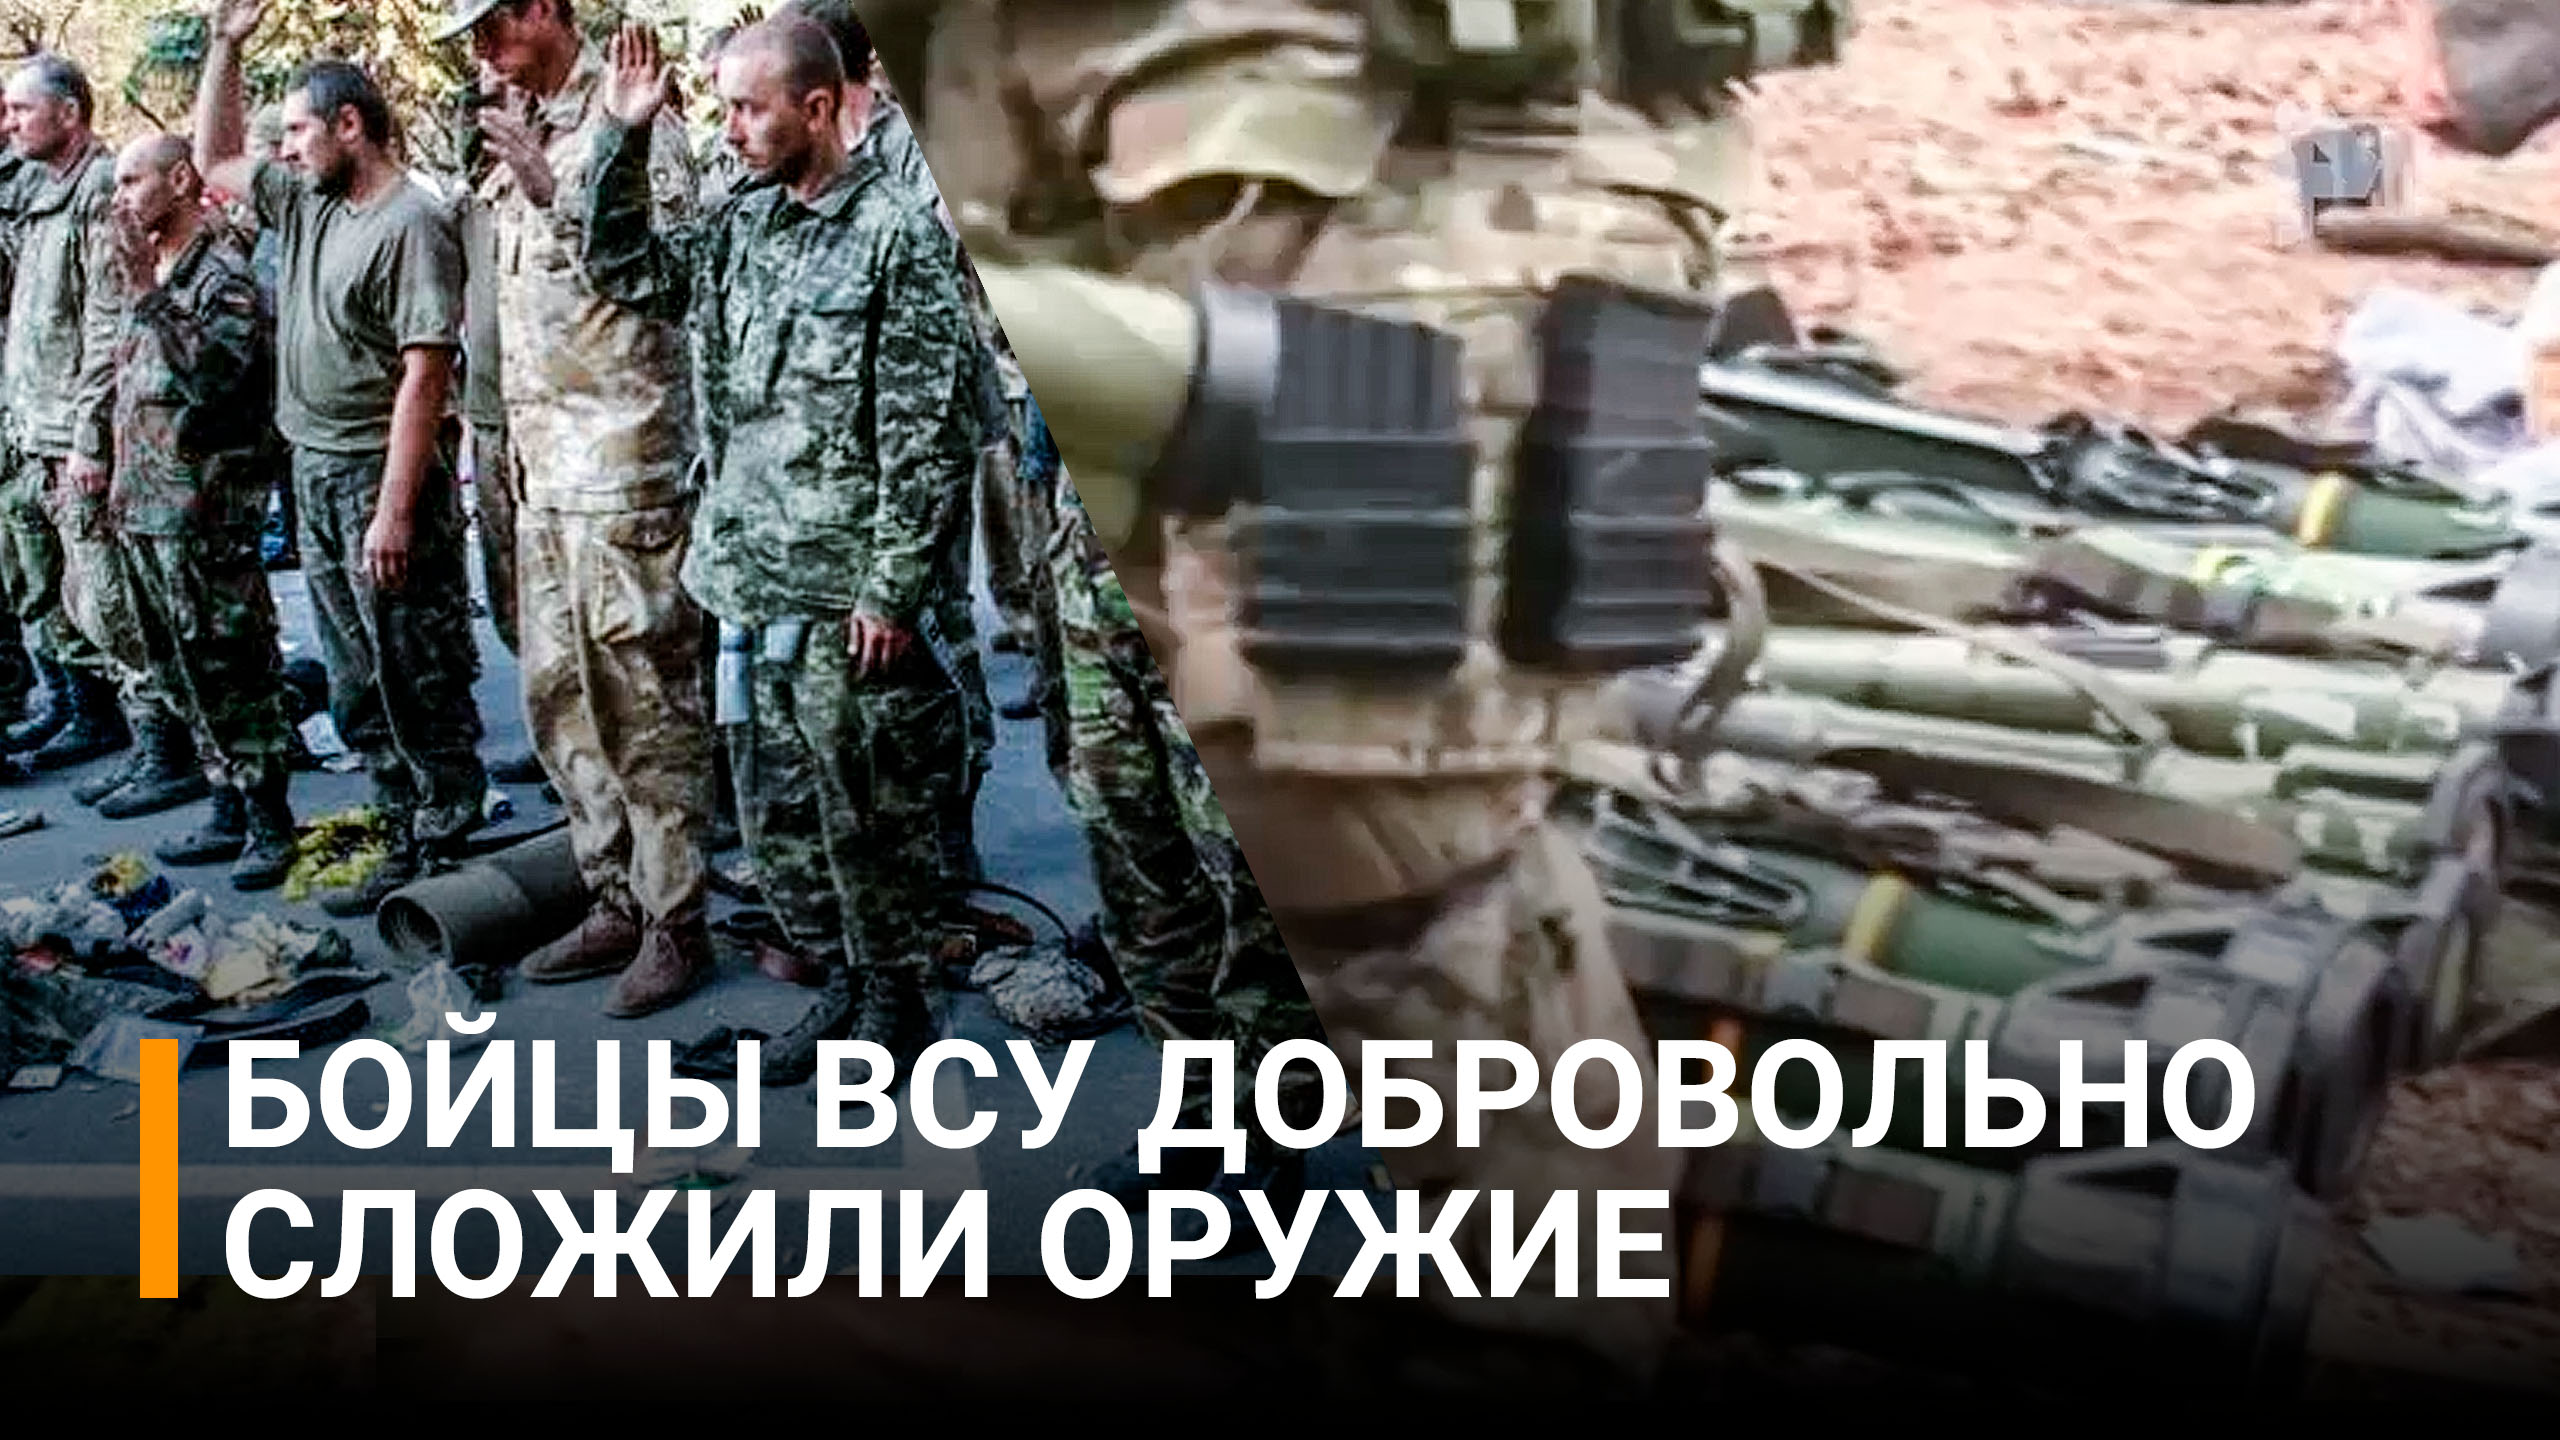 "Кто будет отступать, будем стрелять на месте": ВСУшники  сложили оружие  / РЕН Новости